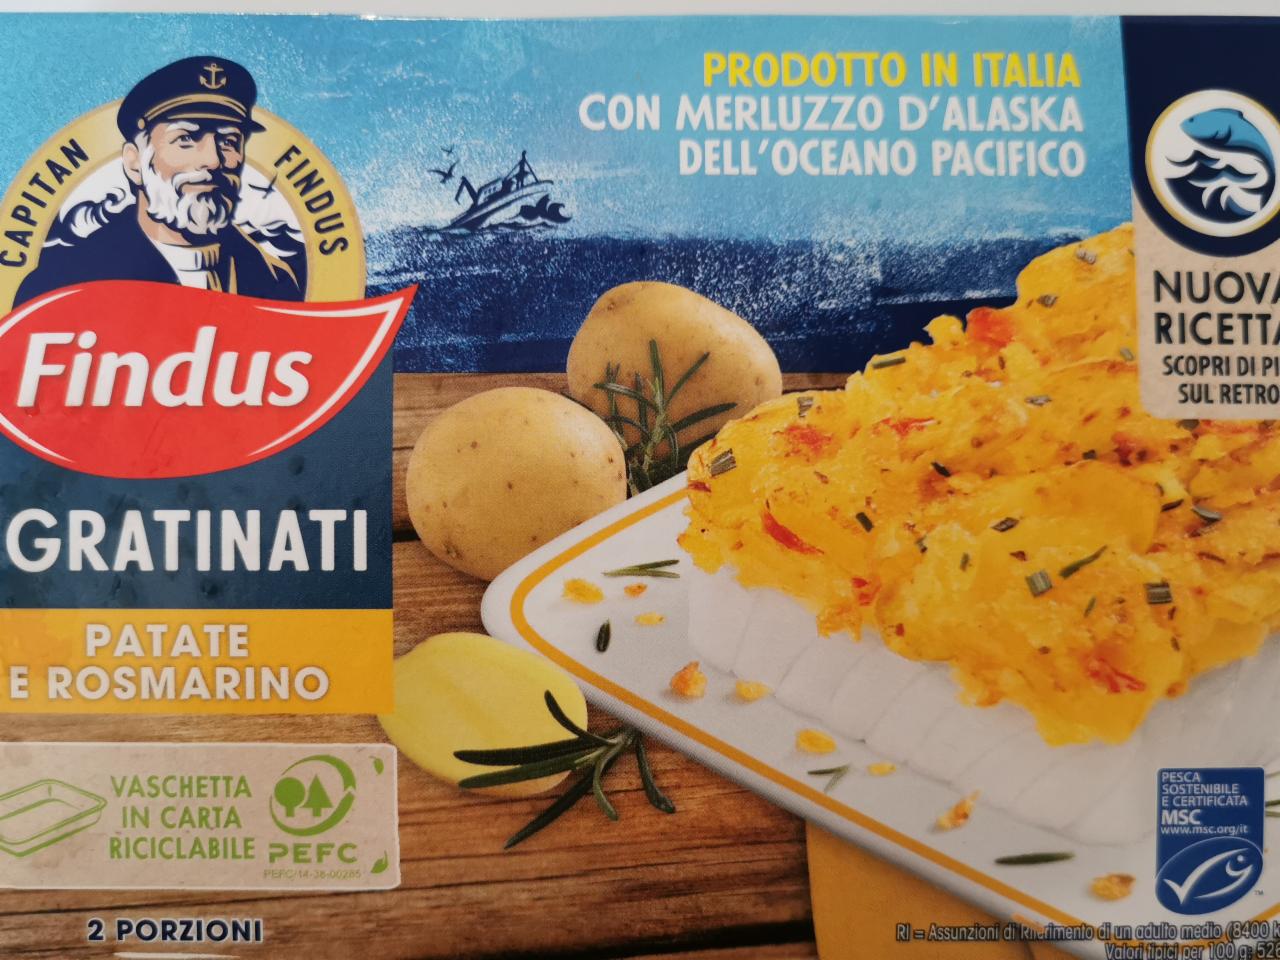 Fotografie - Finds i gratinati patate e rosmarino